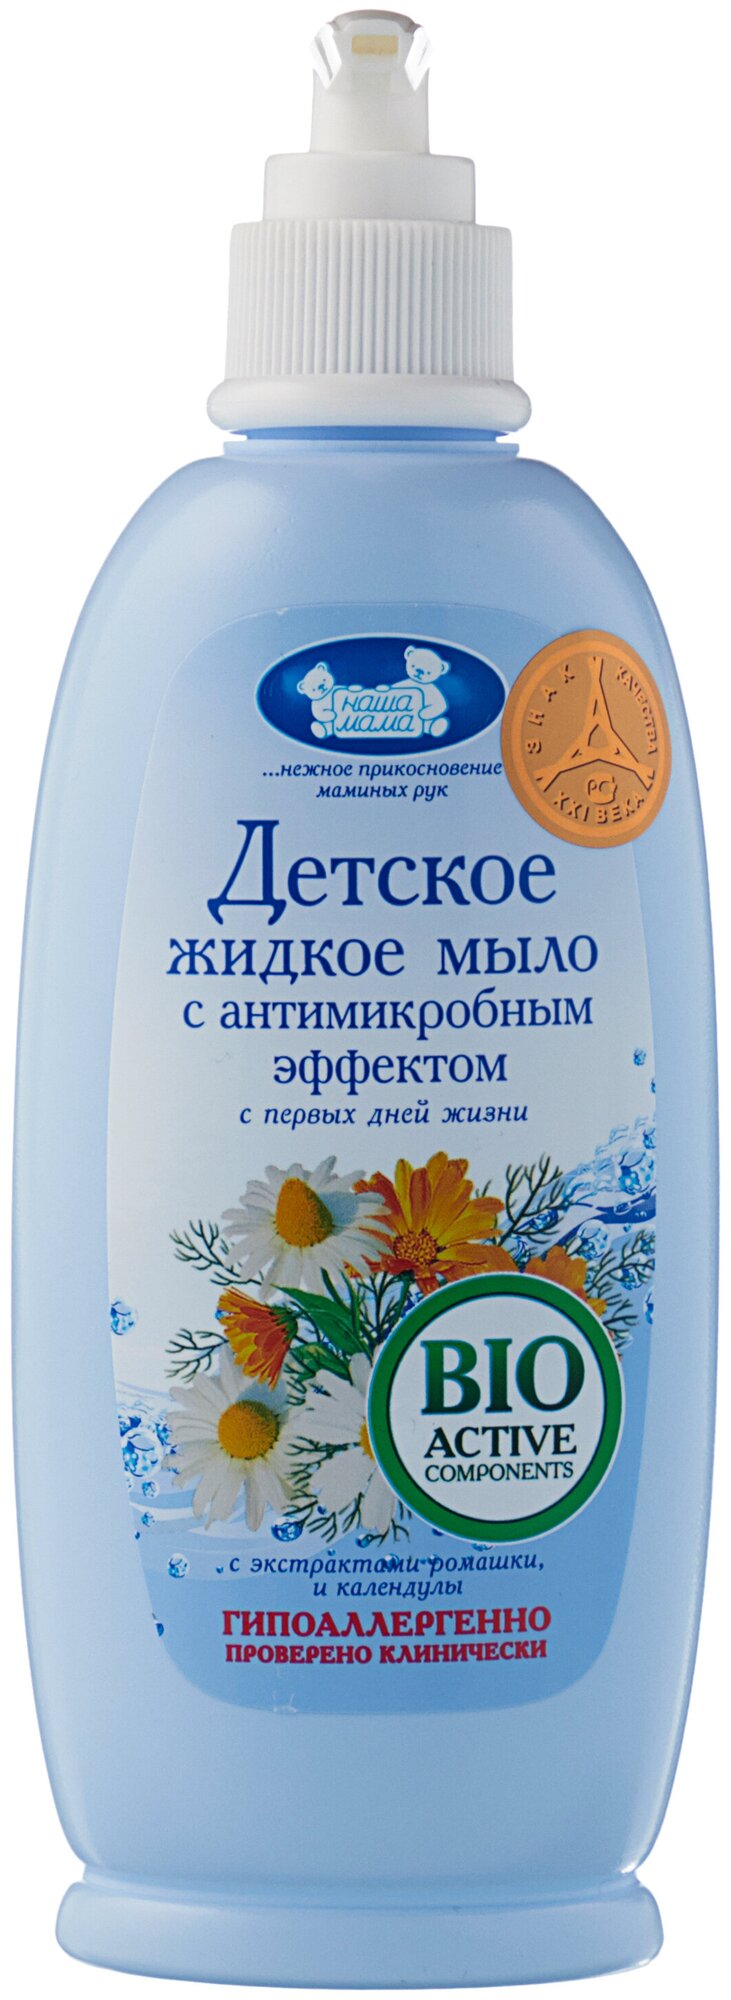 Жидкое мыло детское Наша Мама с антимикробным эффектом 400мл - фото №8